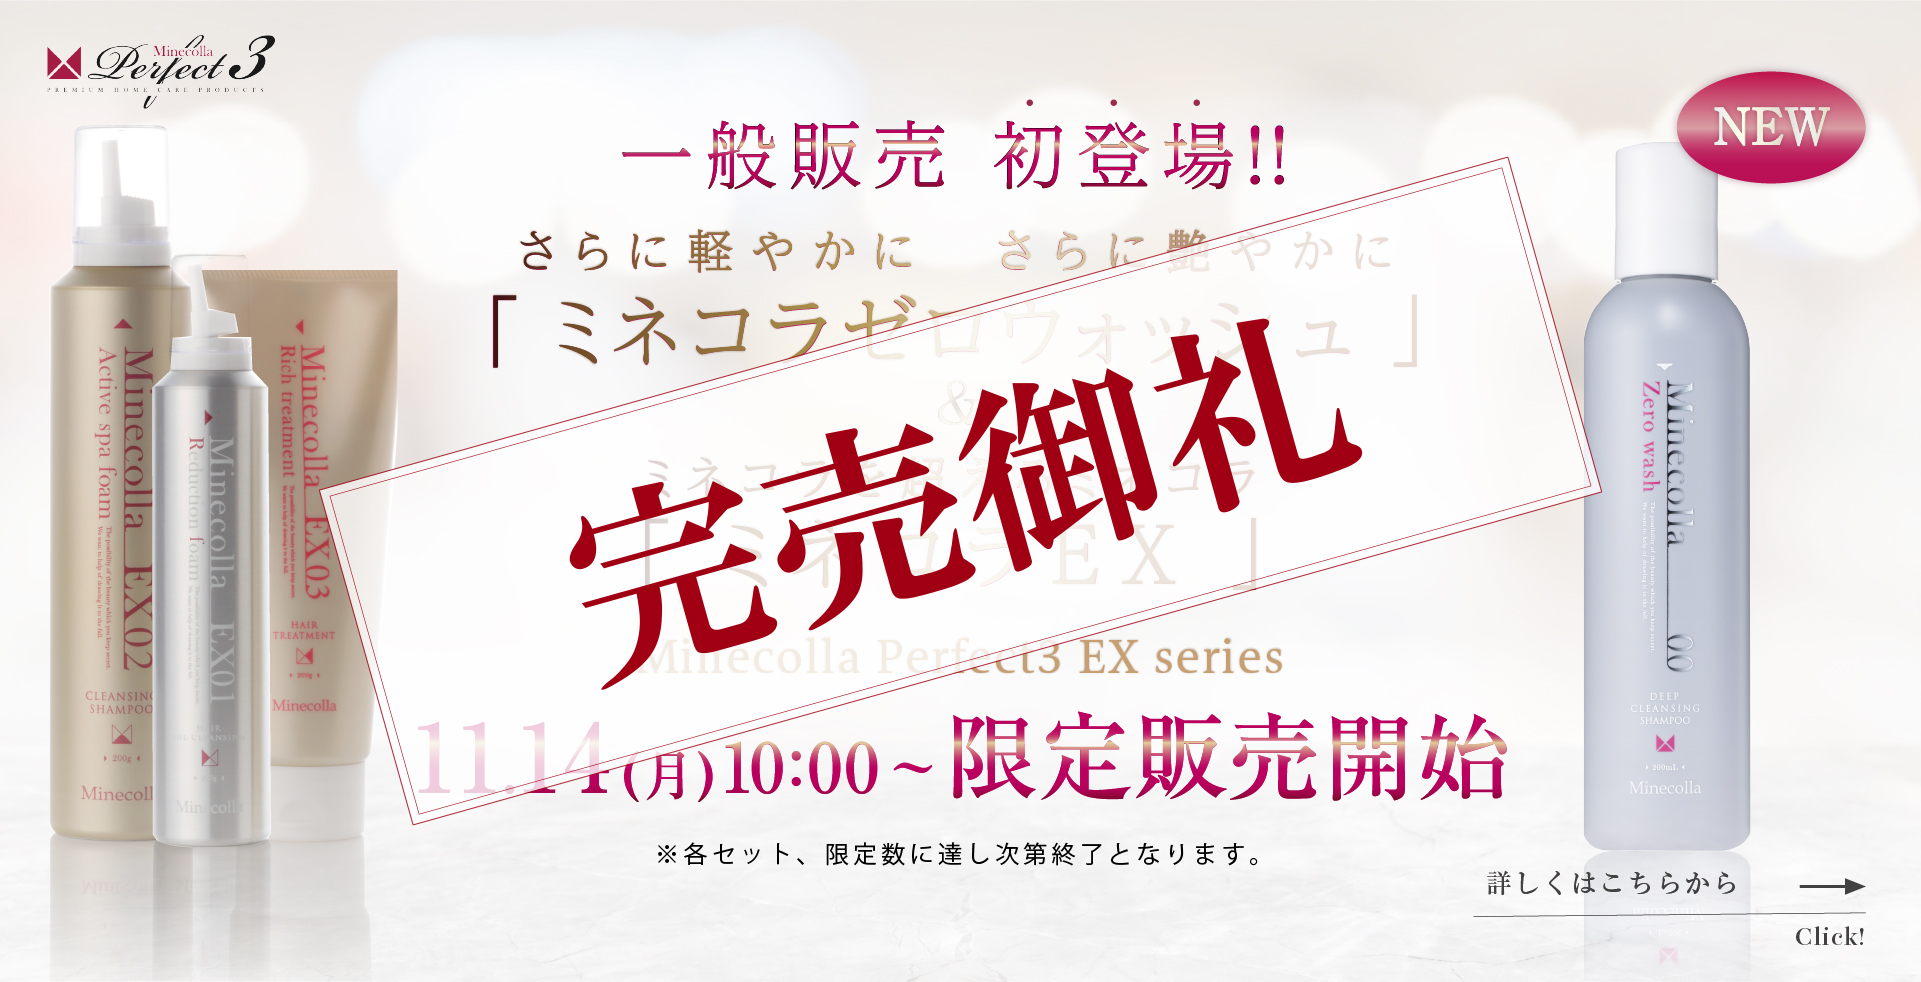 ミネコラを超えるミネコラ Minecolla Perfect3 EX series「ミネコラEX」2020 Debut